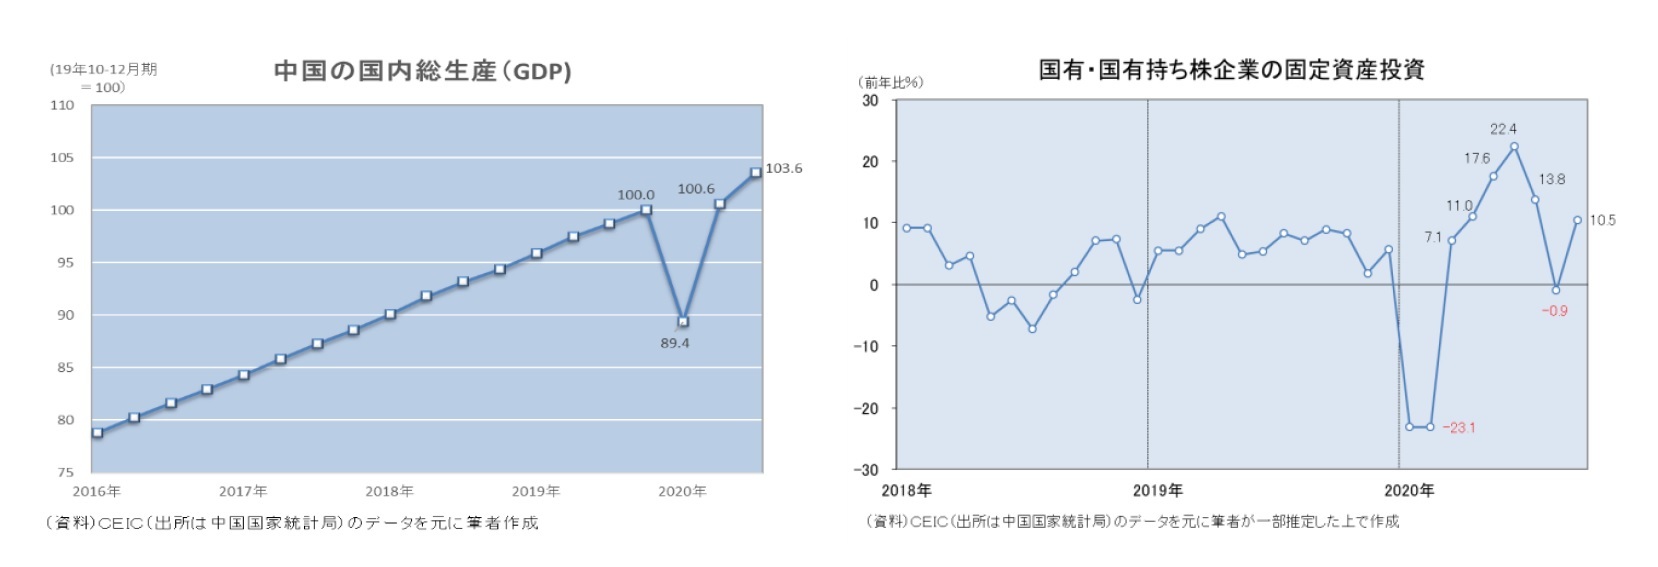 中国の国内総生産(GDP)/国有・国有持ち株企業の固定資産投資